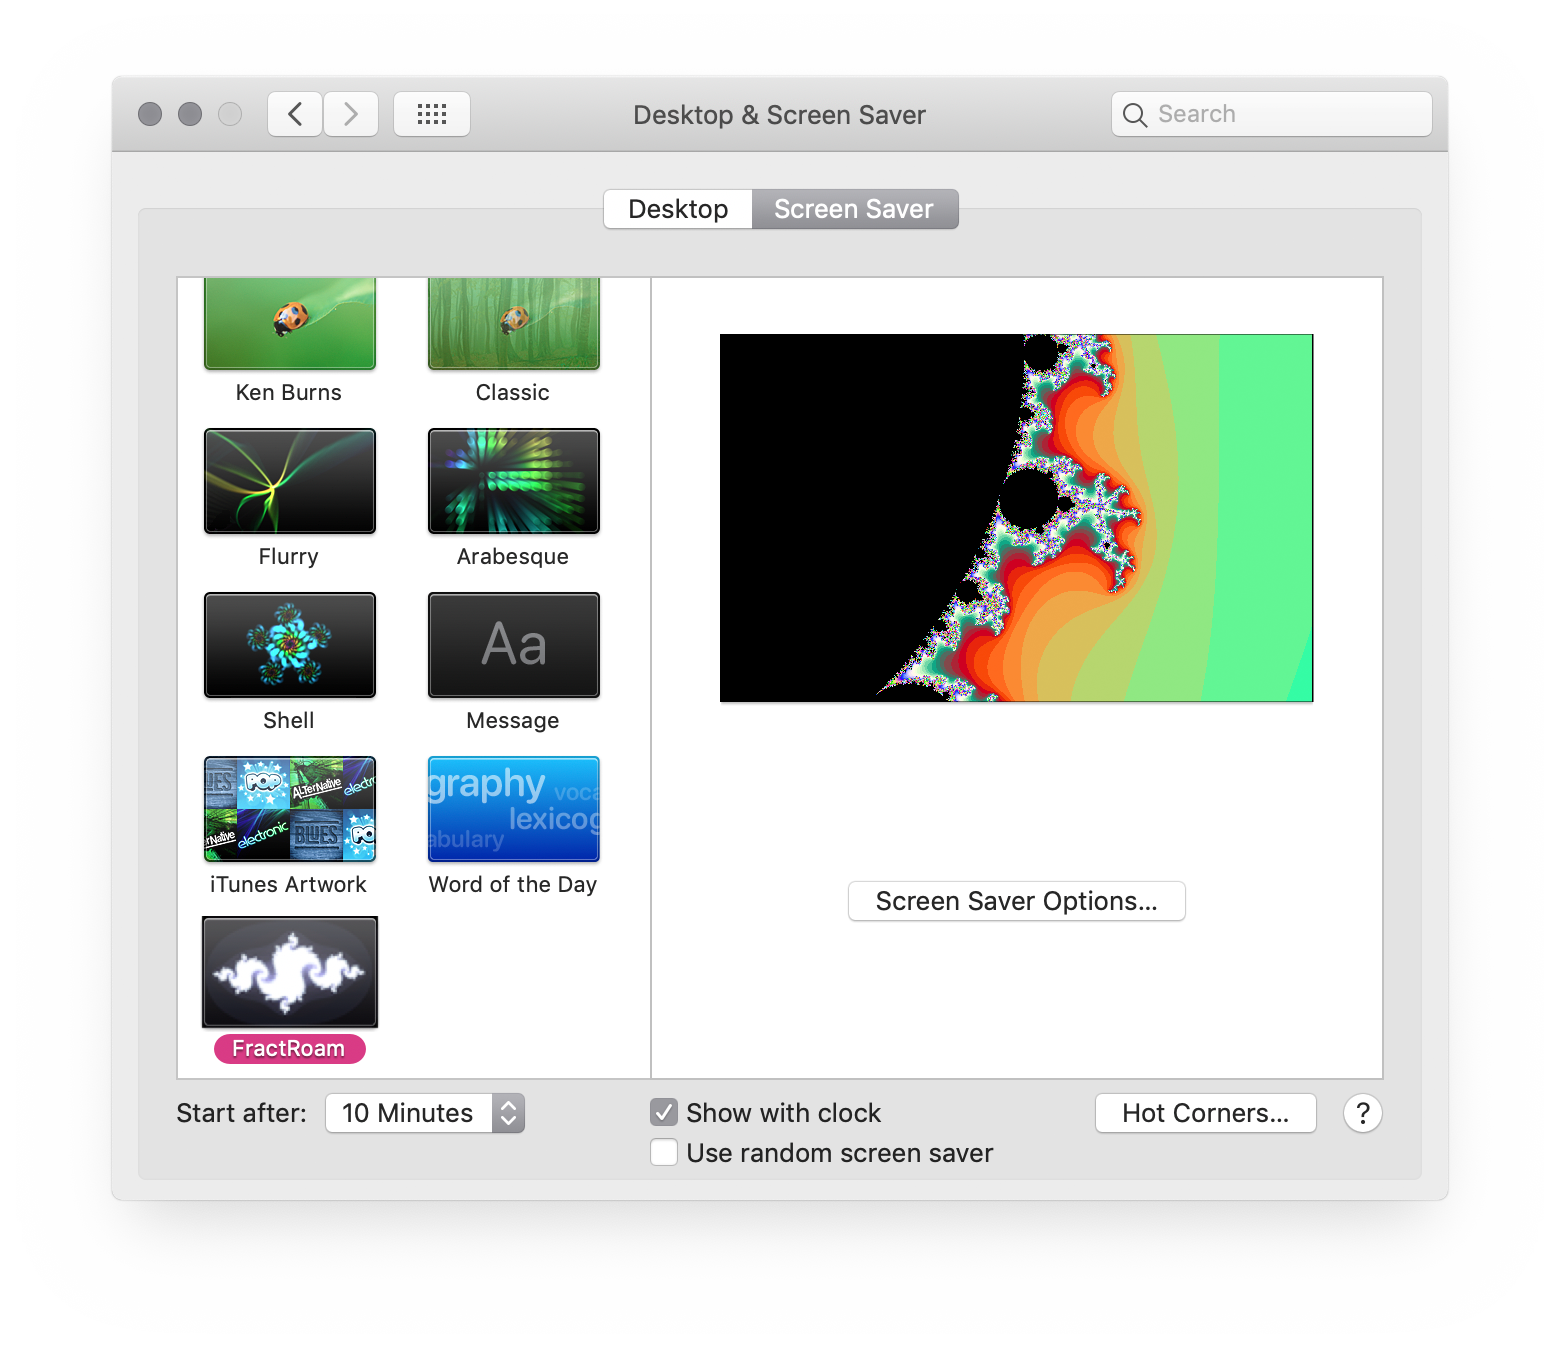 MacOS Desktop & Screen Saver Settings